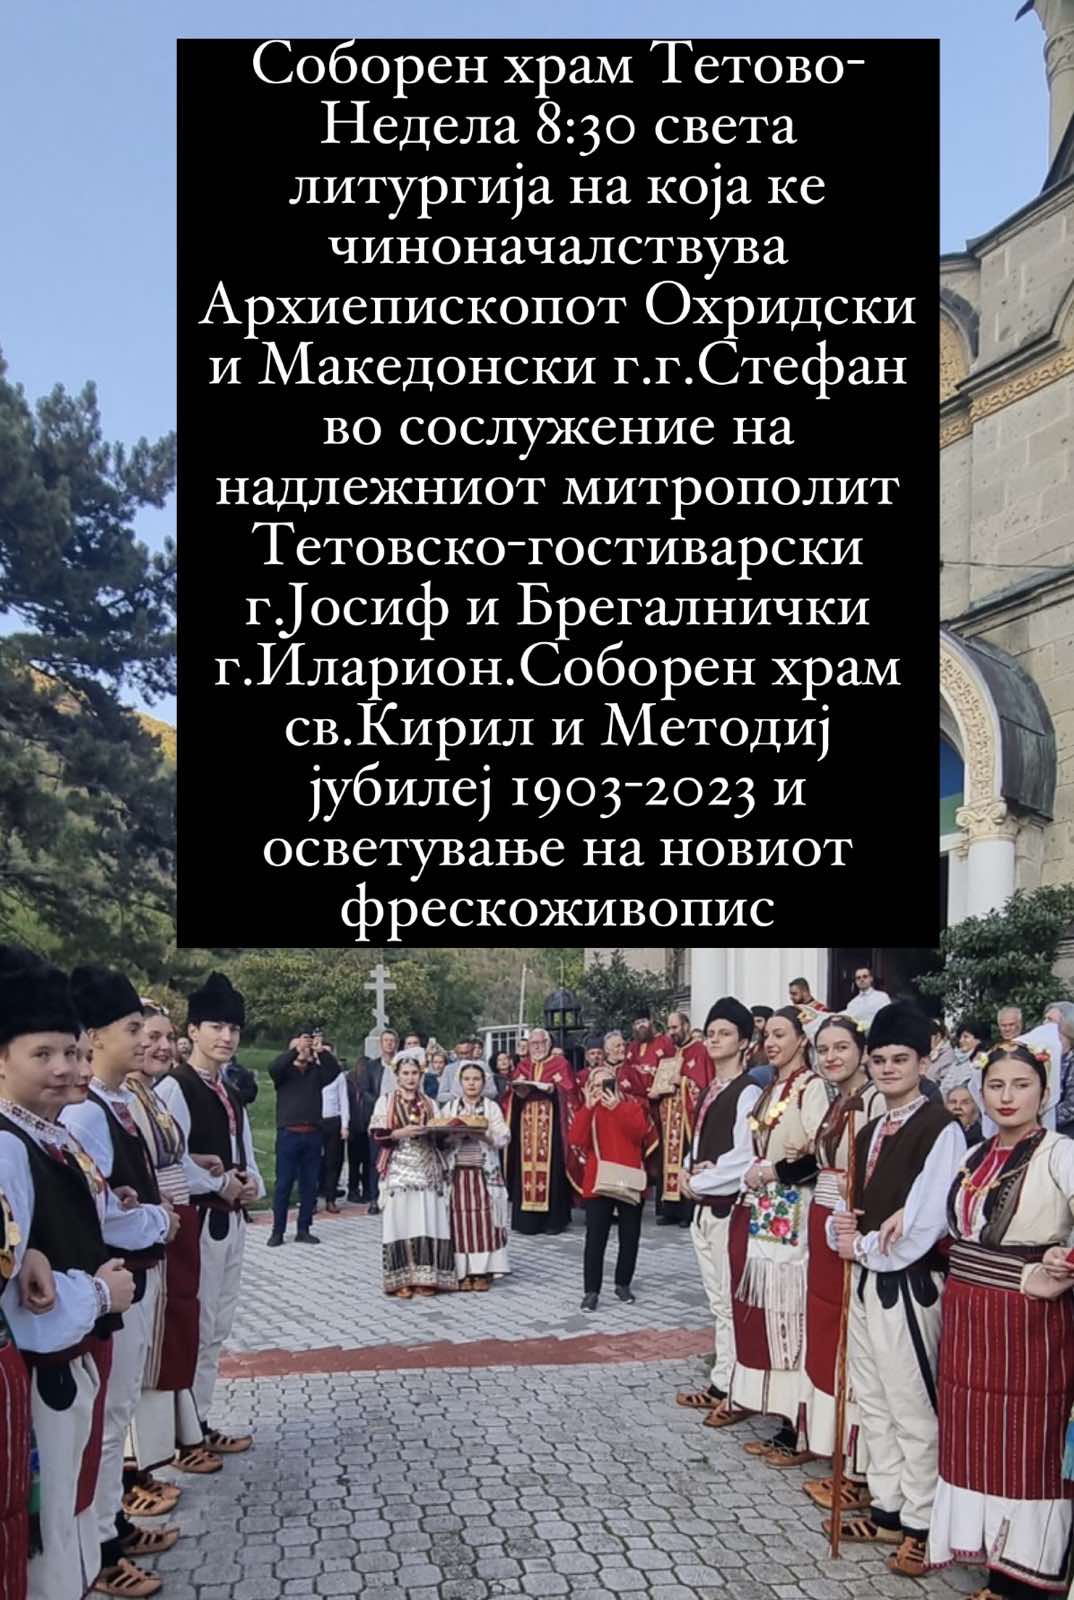 Соборен храм св. Кирил и Методиј 